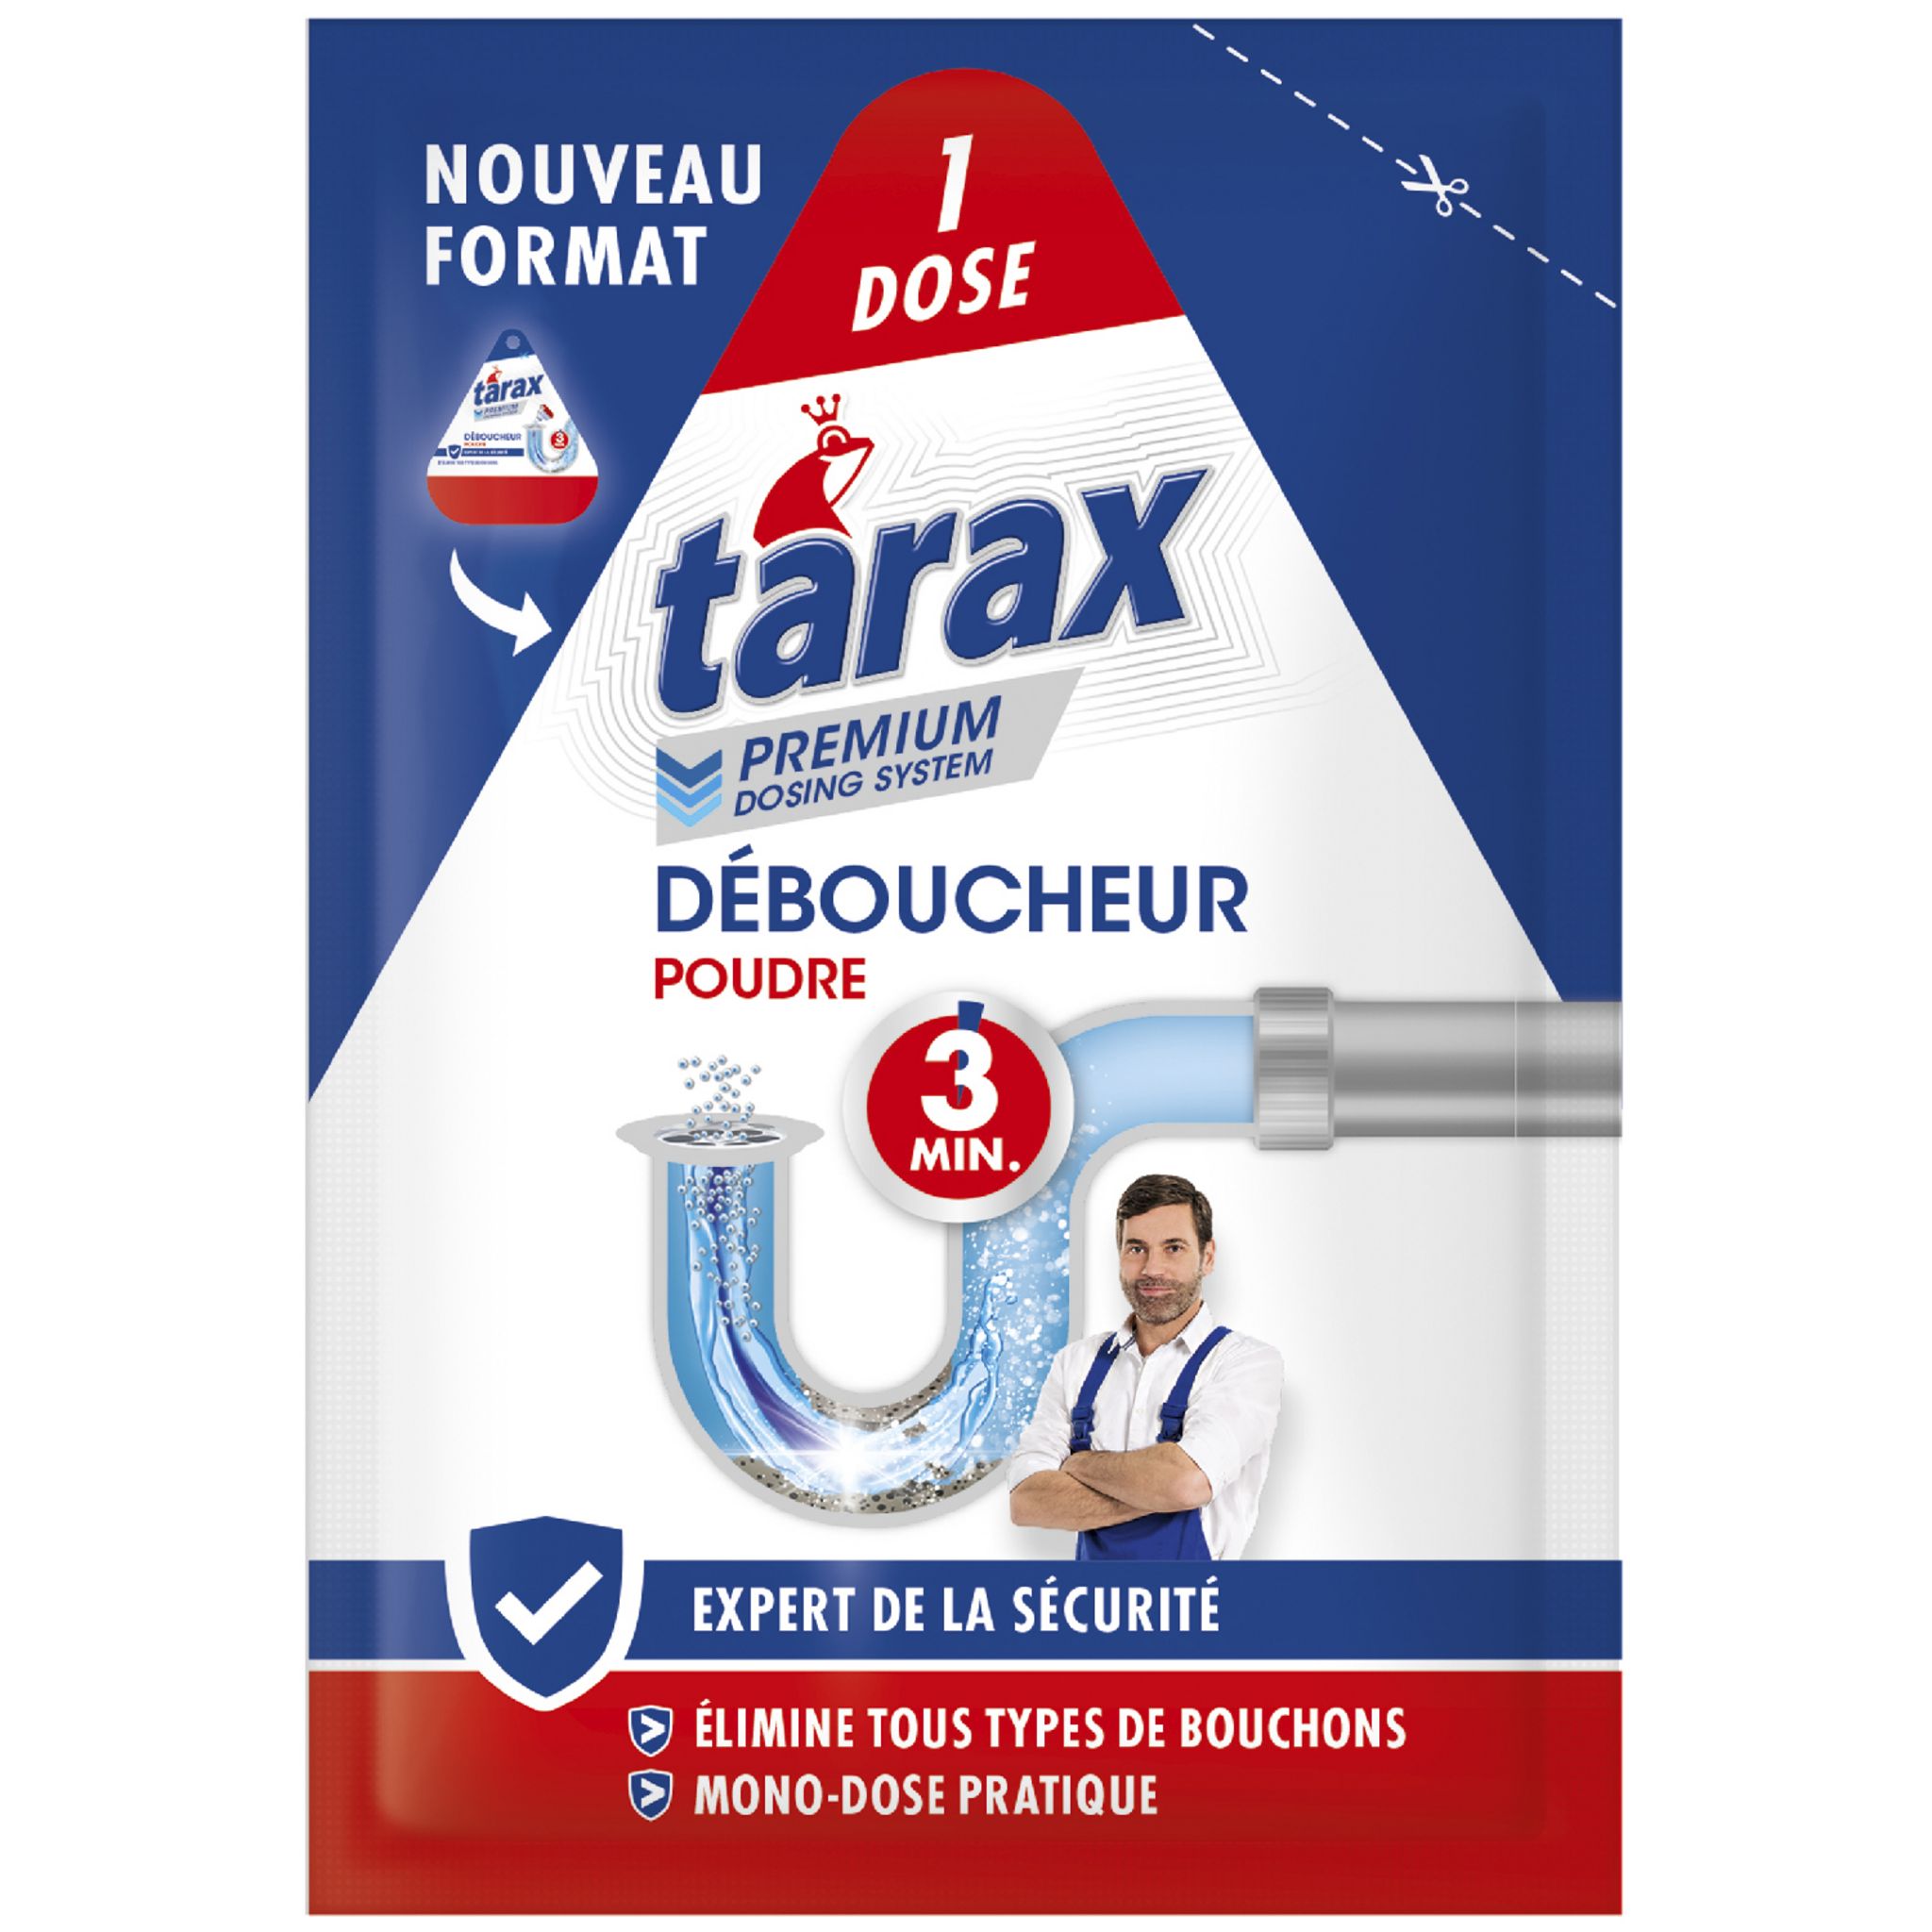 Tarax eco deboucheur 1l - Tous les produits entretien de la maison - Prixing